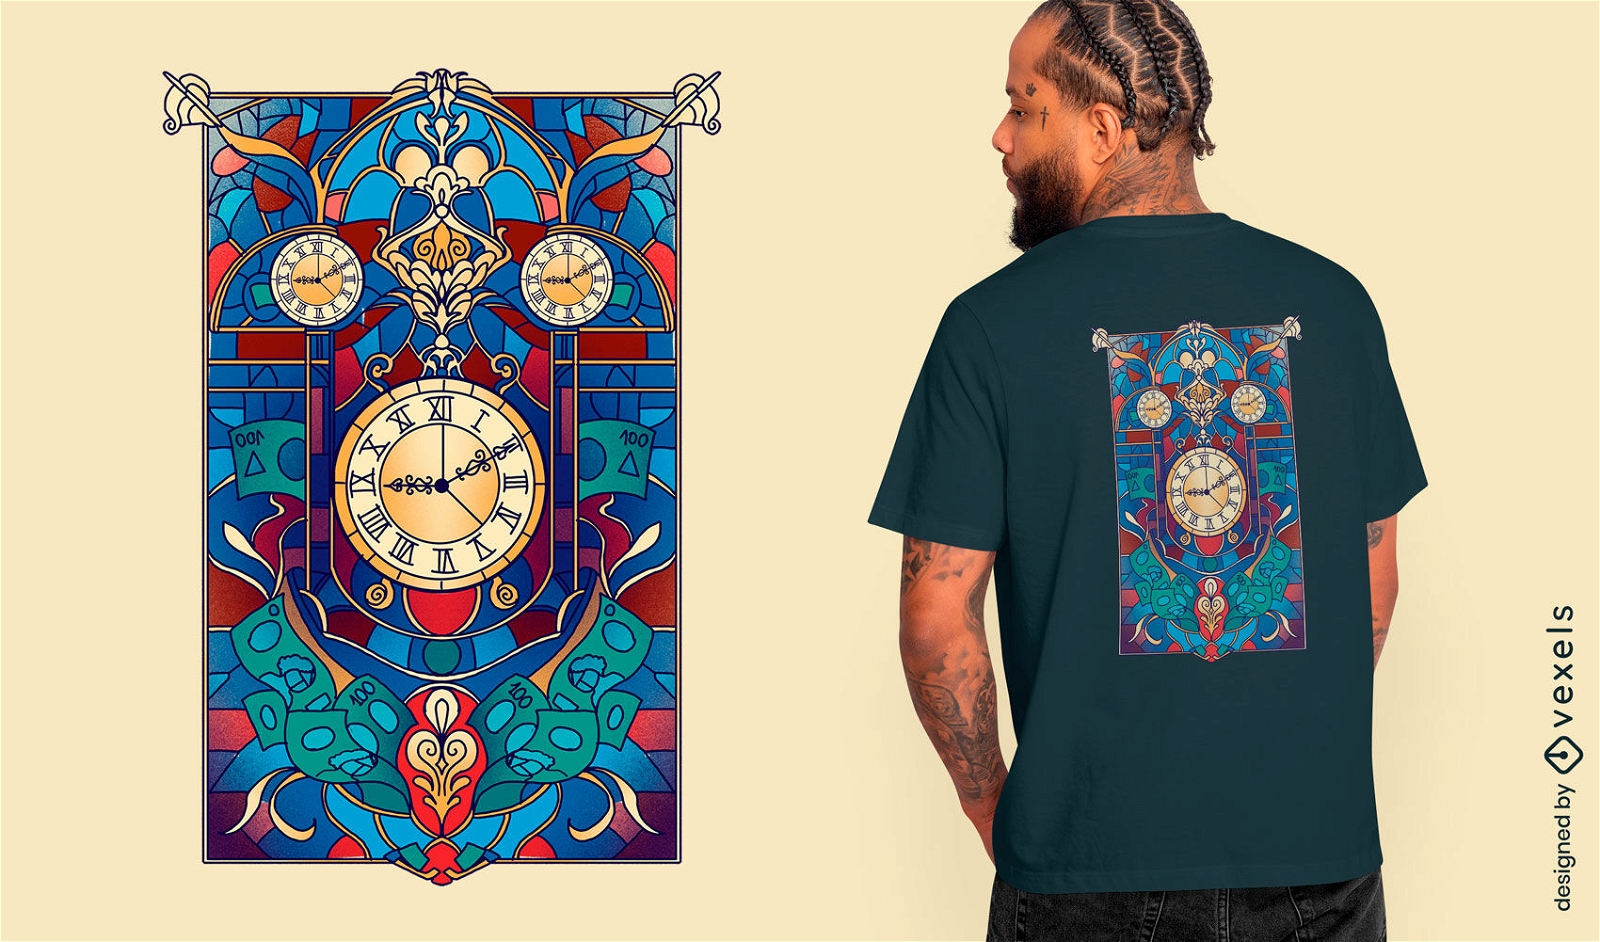 Diseño de camiseta de reloj artístico con vidrieras.